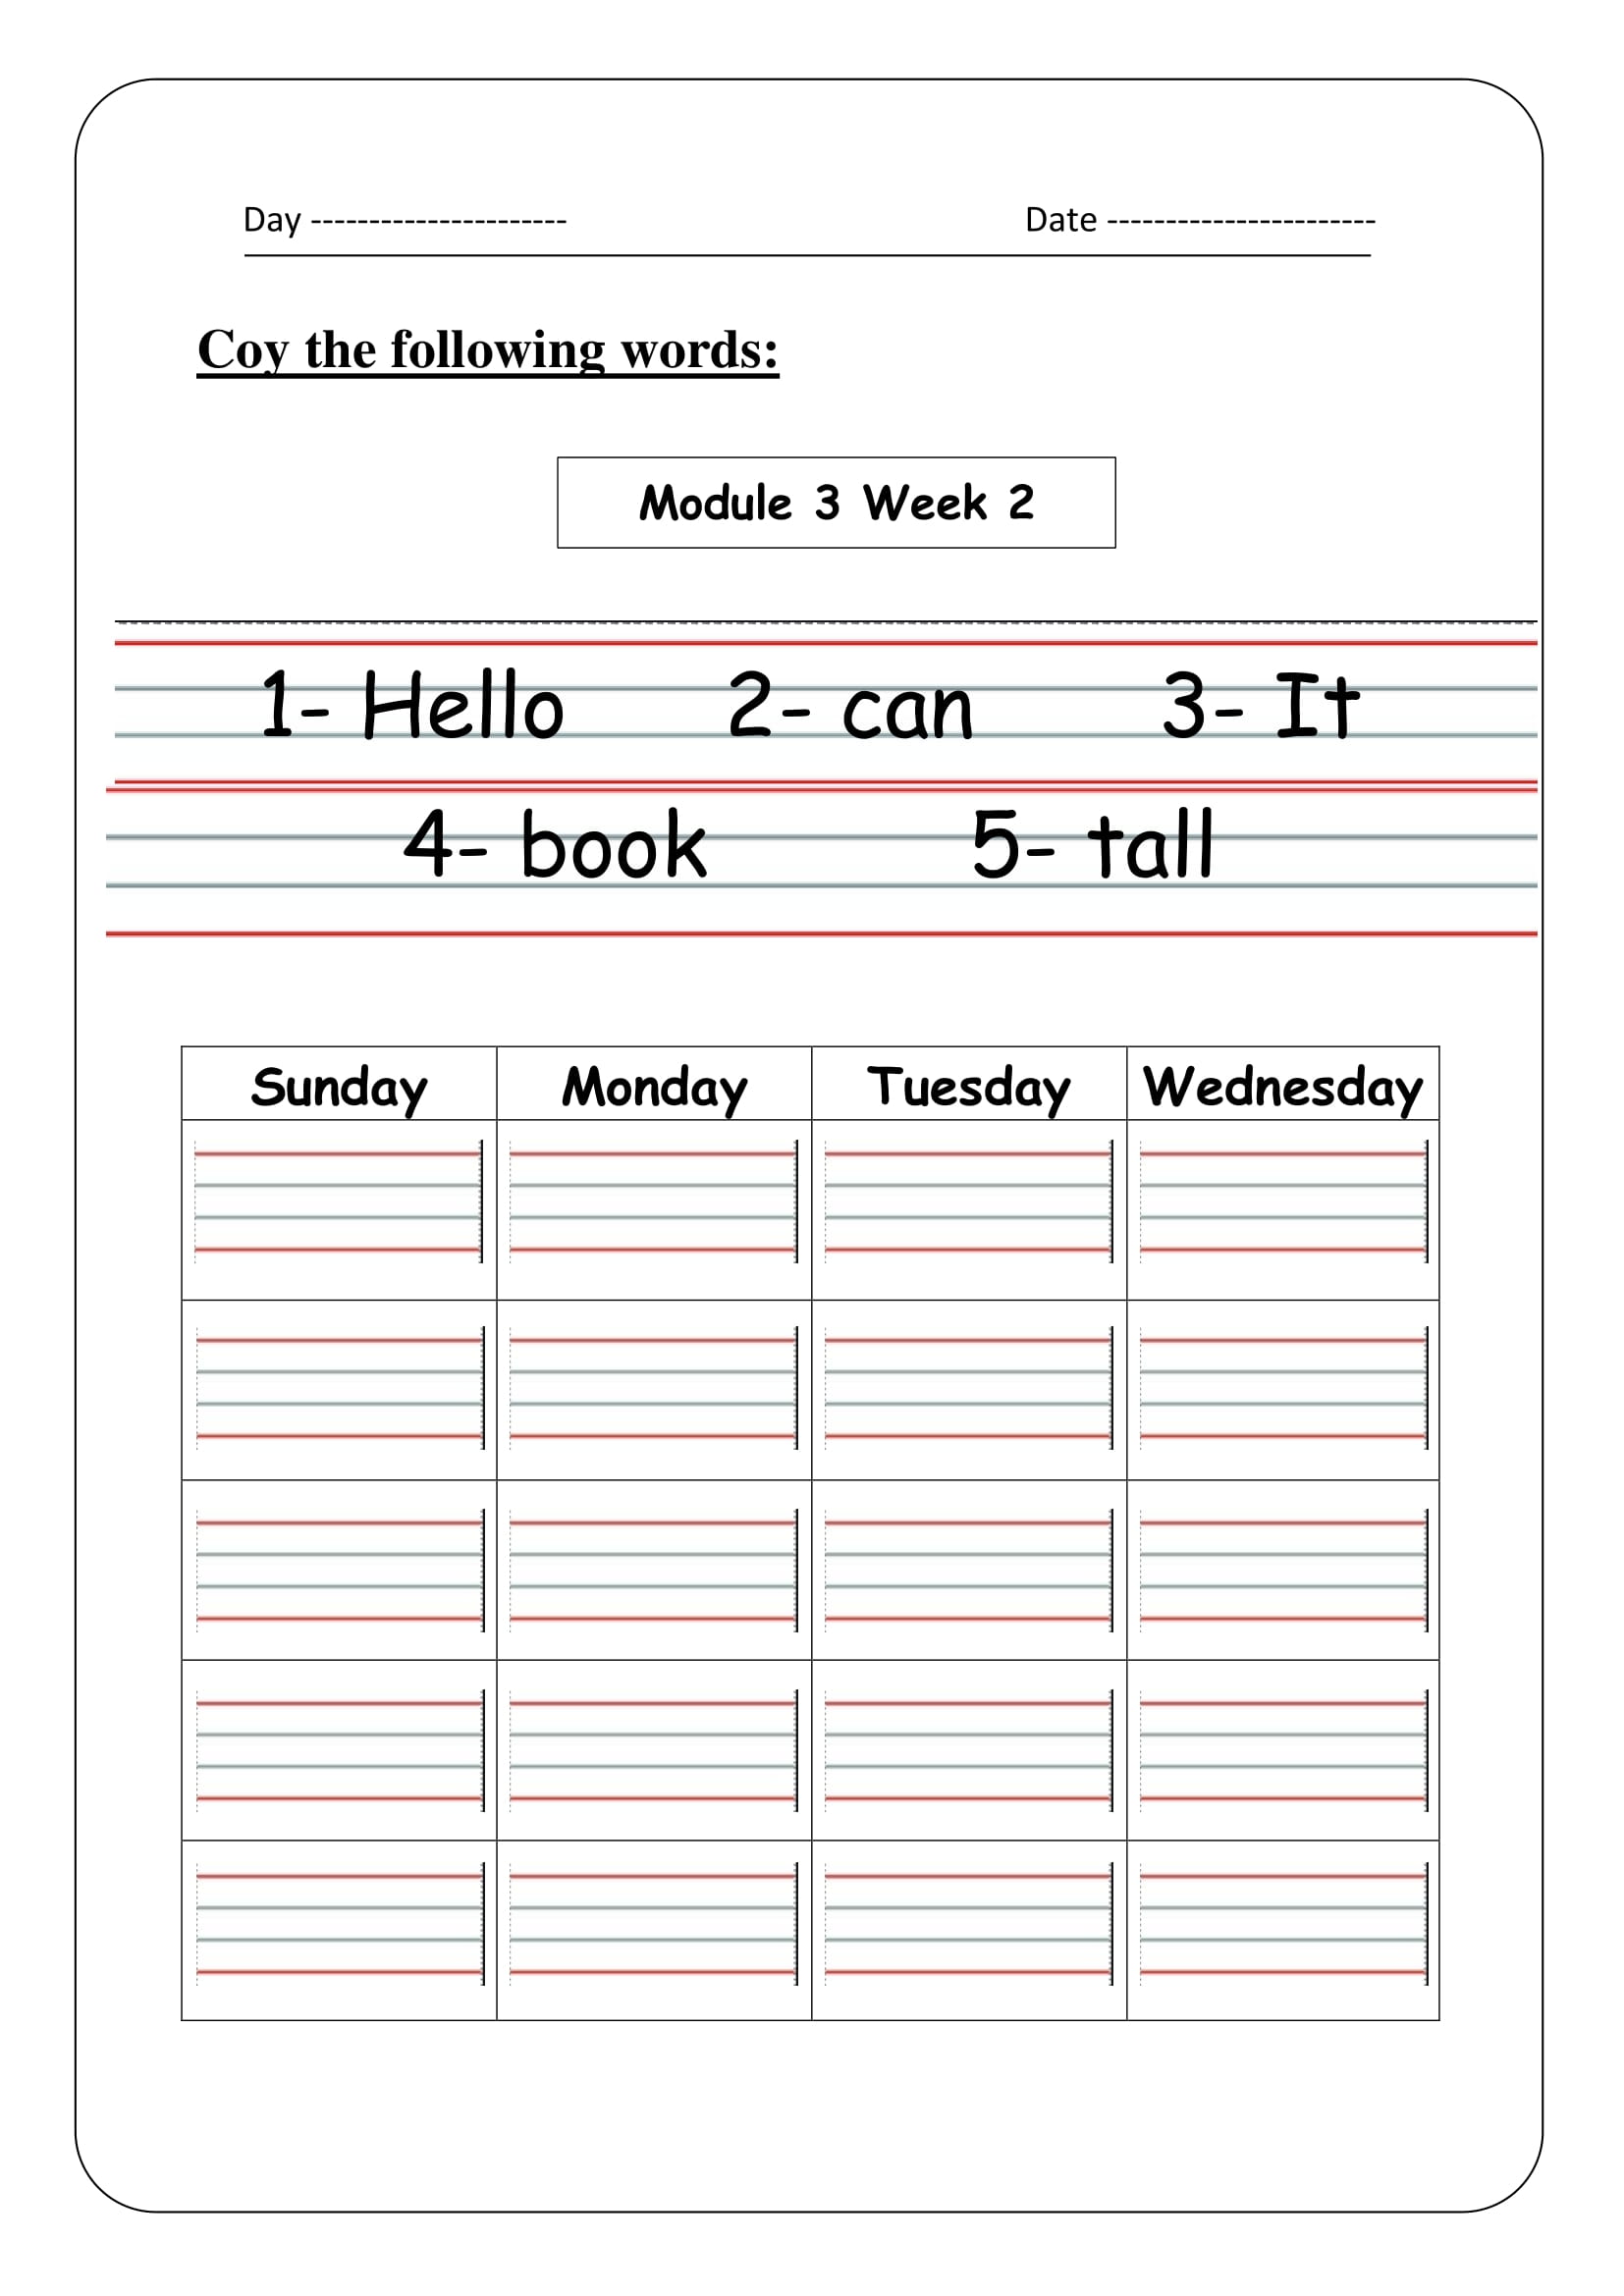 ملزمة حفظ كلمات الصف الأول للغة الانجليزية من الوحدة1 الى 4 pdf تحميل مباشر